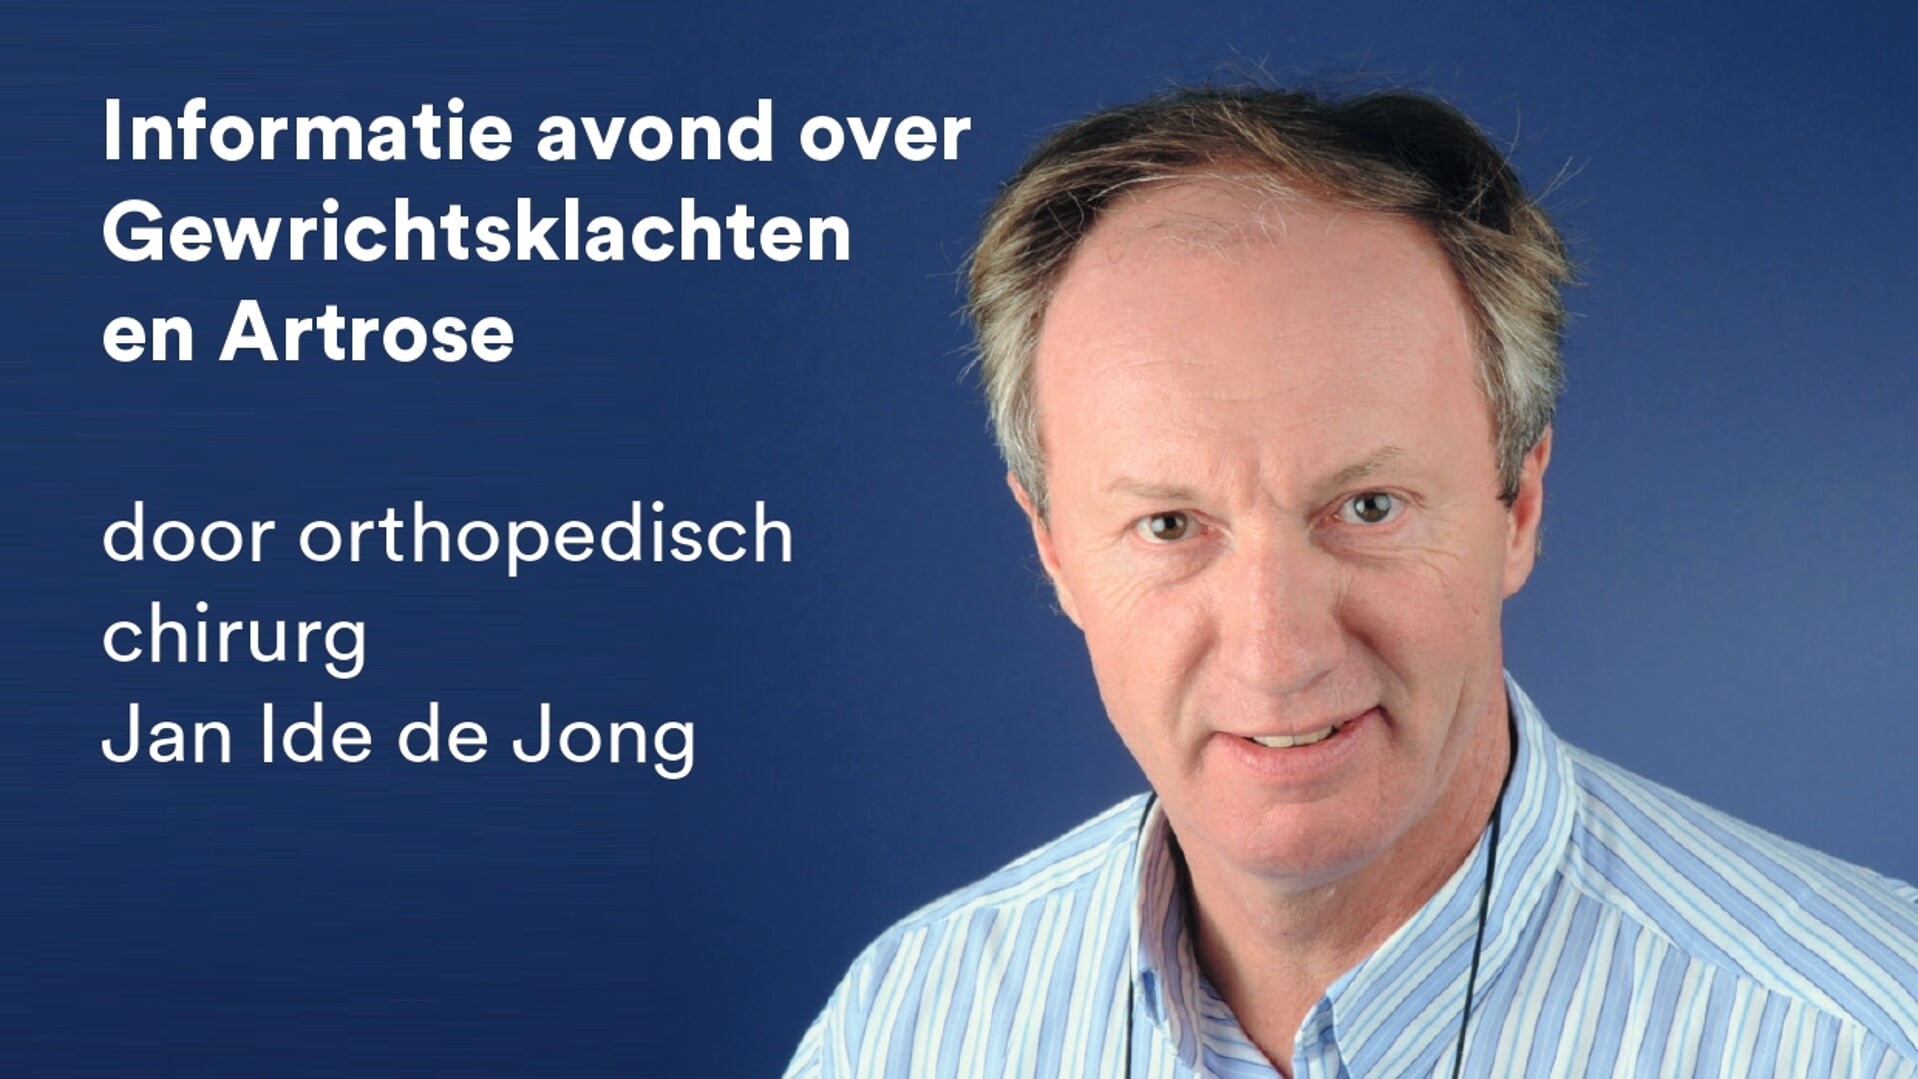 Orthopedisch chirurg Jan Ide de Jong zal tijdens de lezing spreken over natuurlijke ontstekingsremmers.